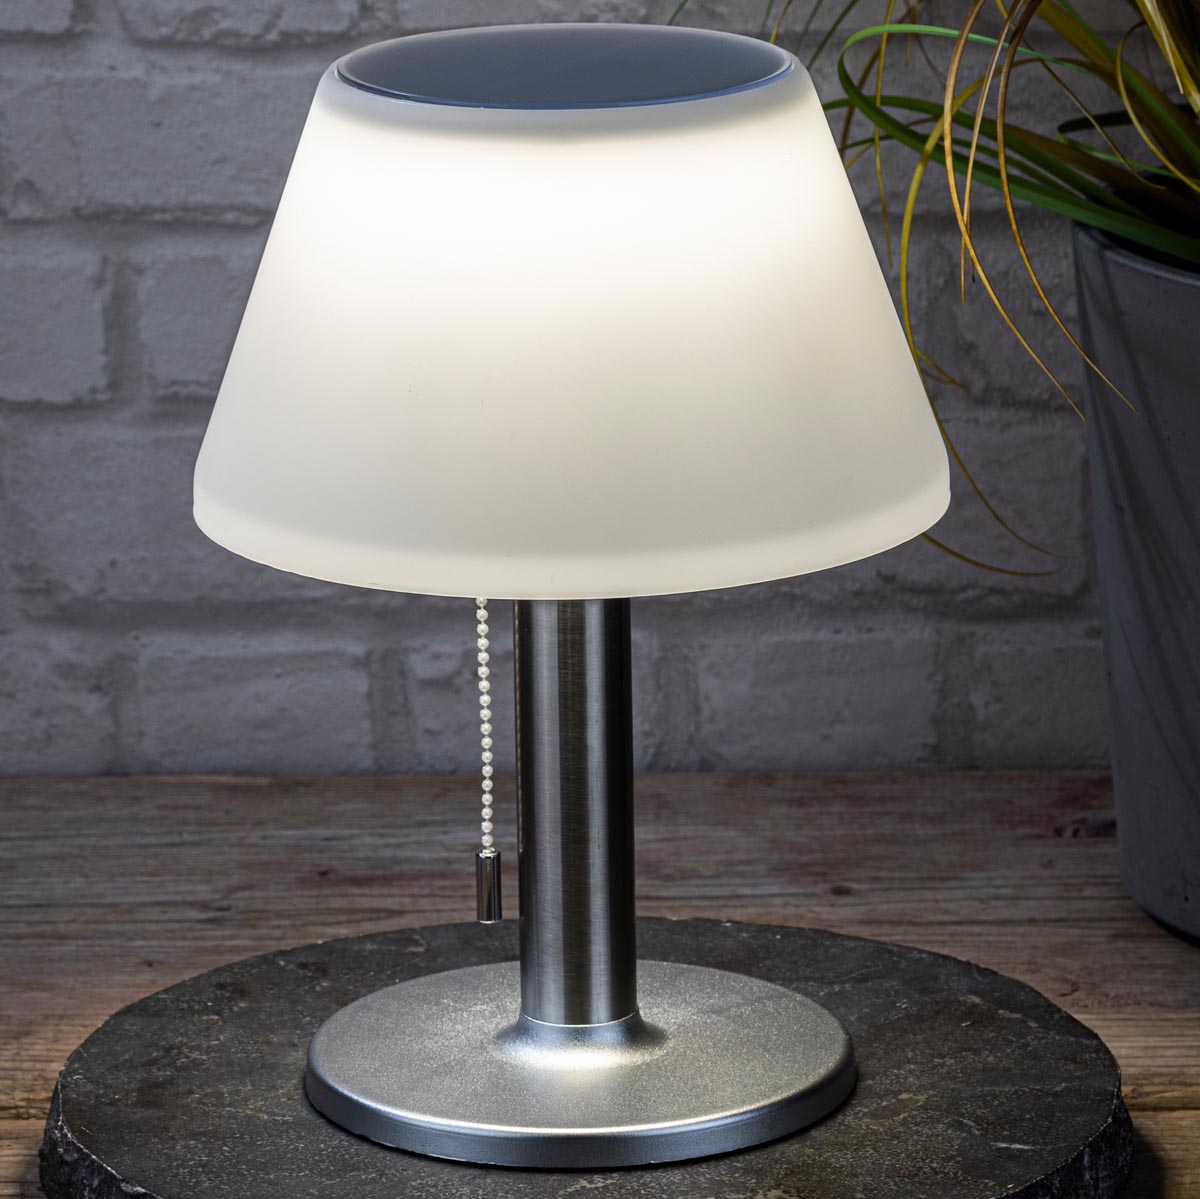 E-shop Haushalt international Solární stolní lampa